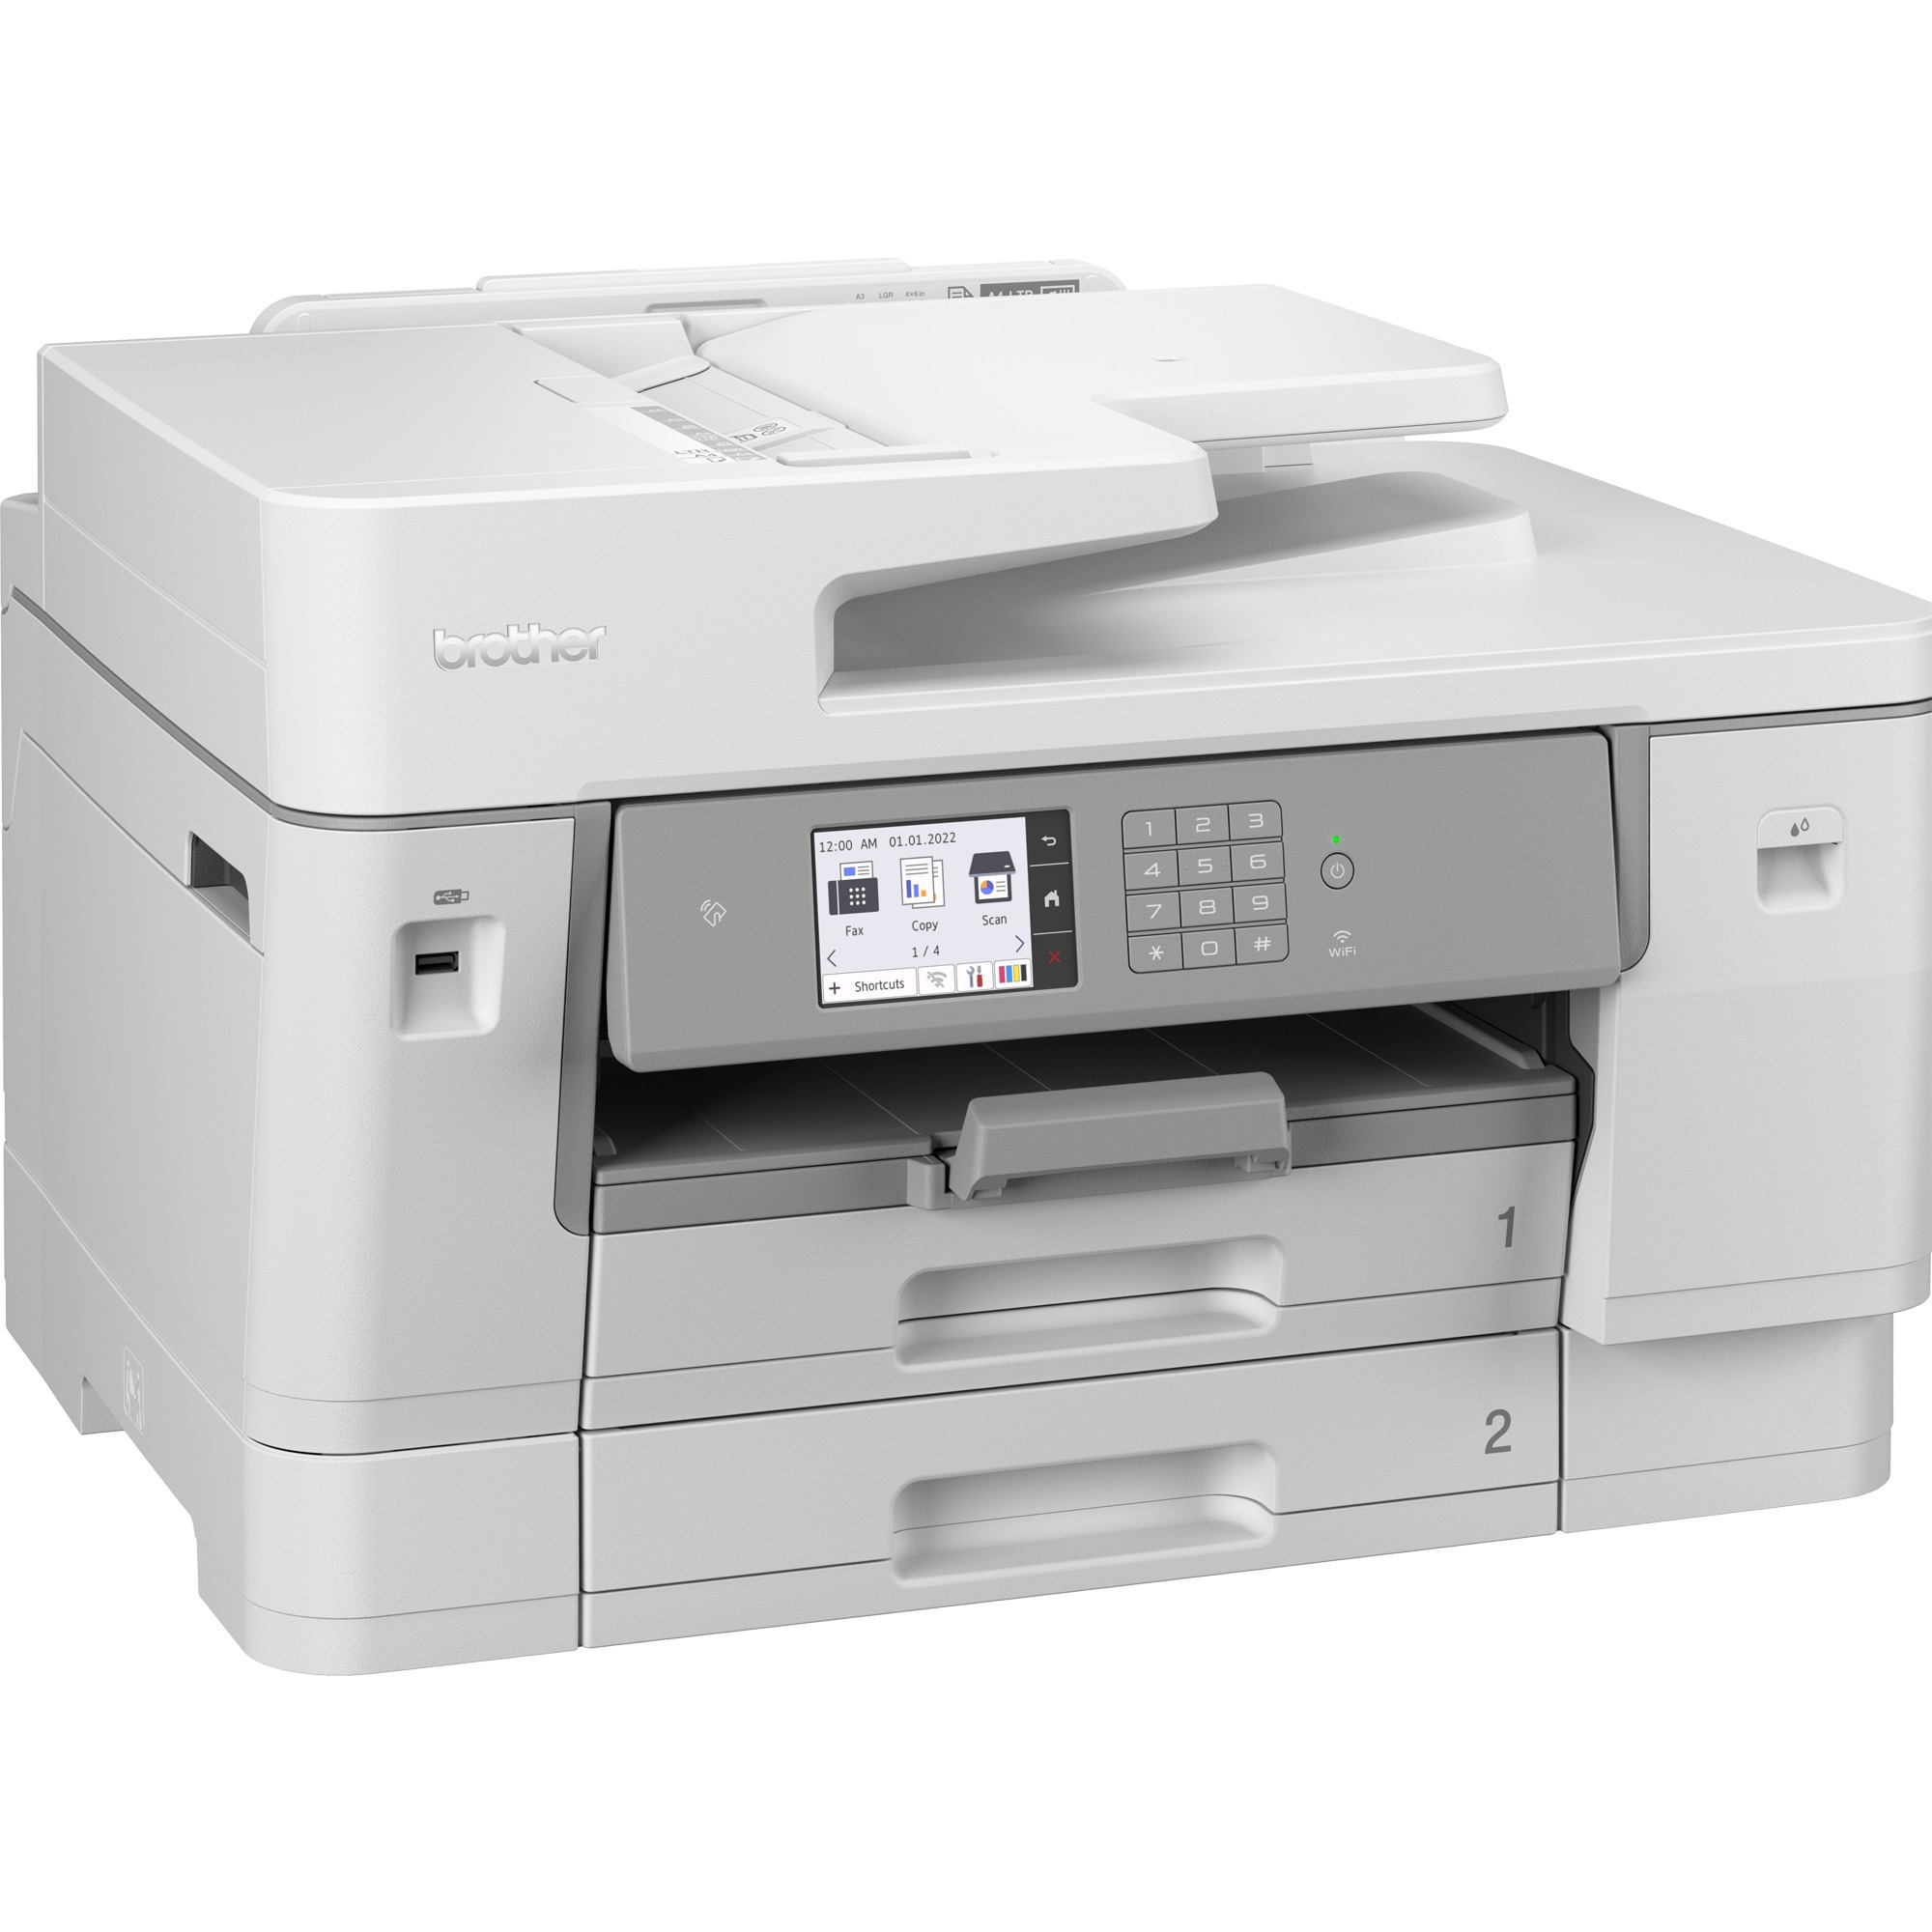 Image of Alternate - MFC-J6955DW, Multifunktionsdrucker online einkaufen bei Alternate